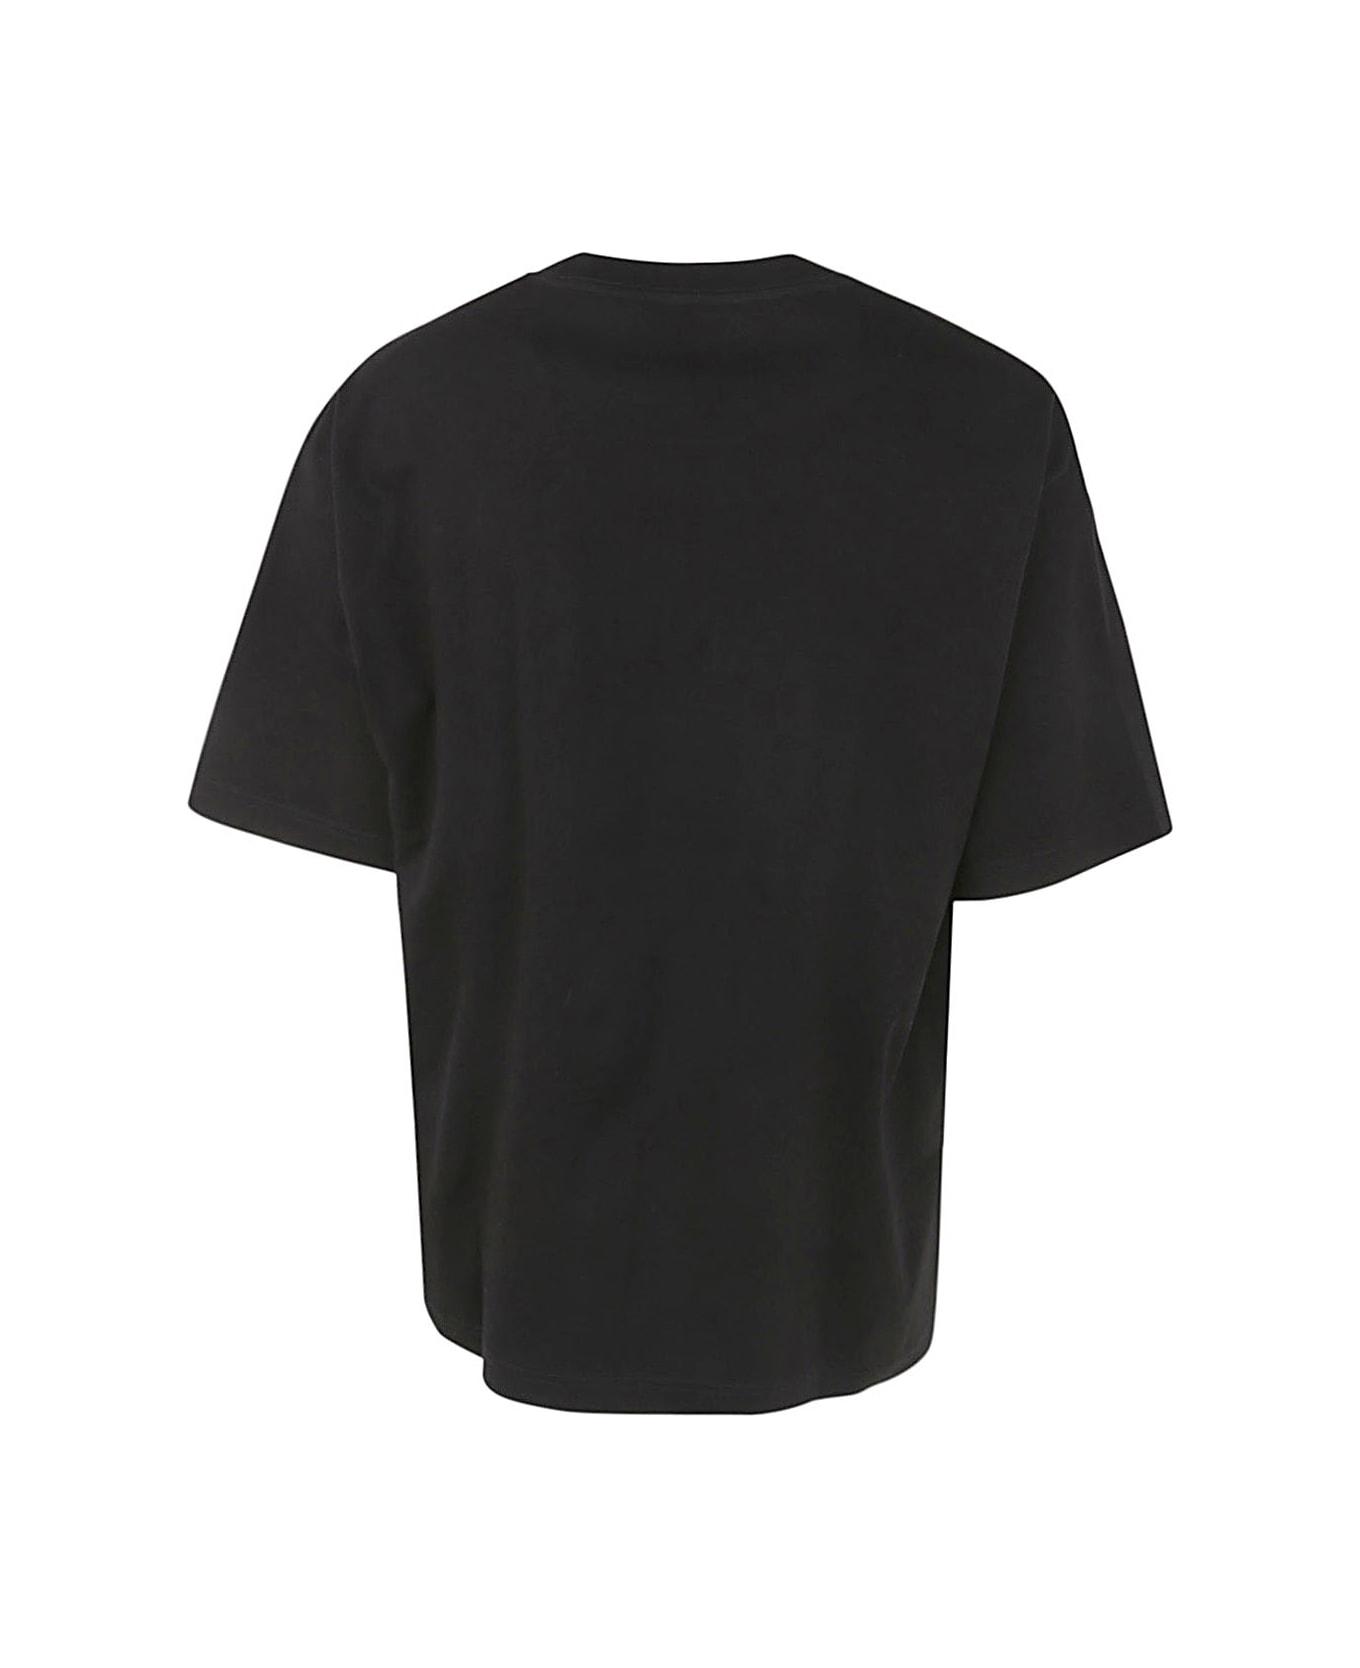 Lanvin Paris Oversized T-shirt - Black